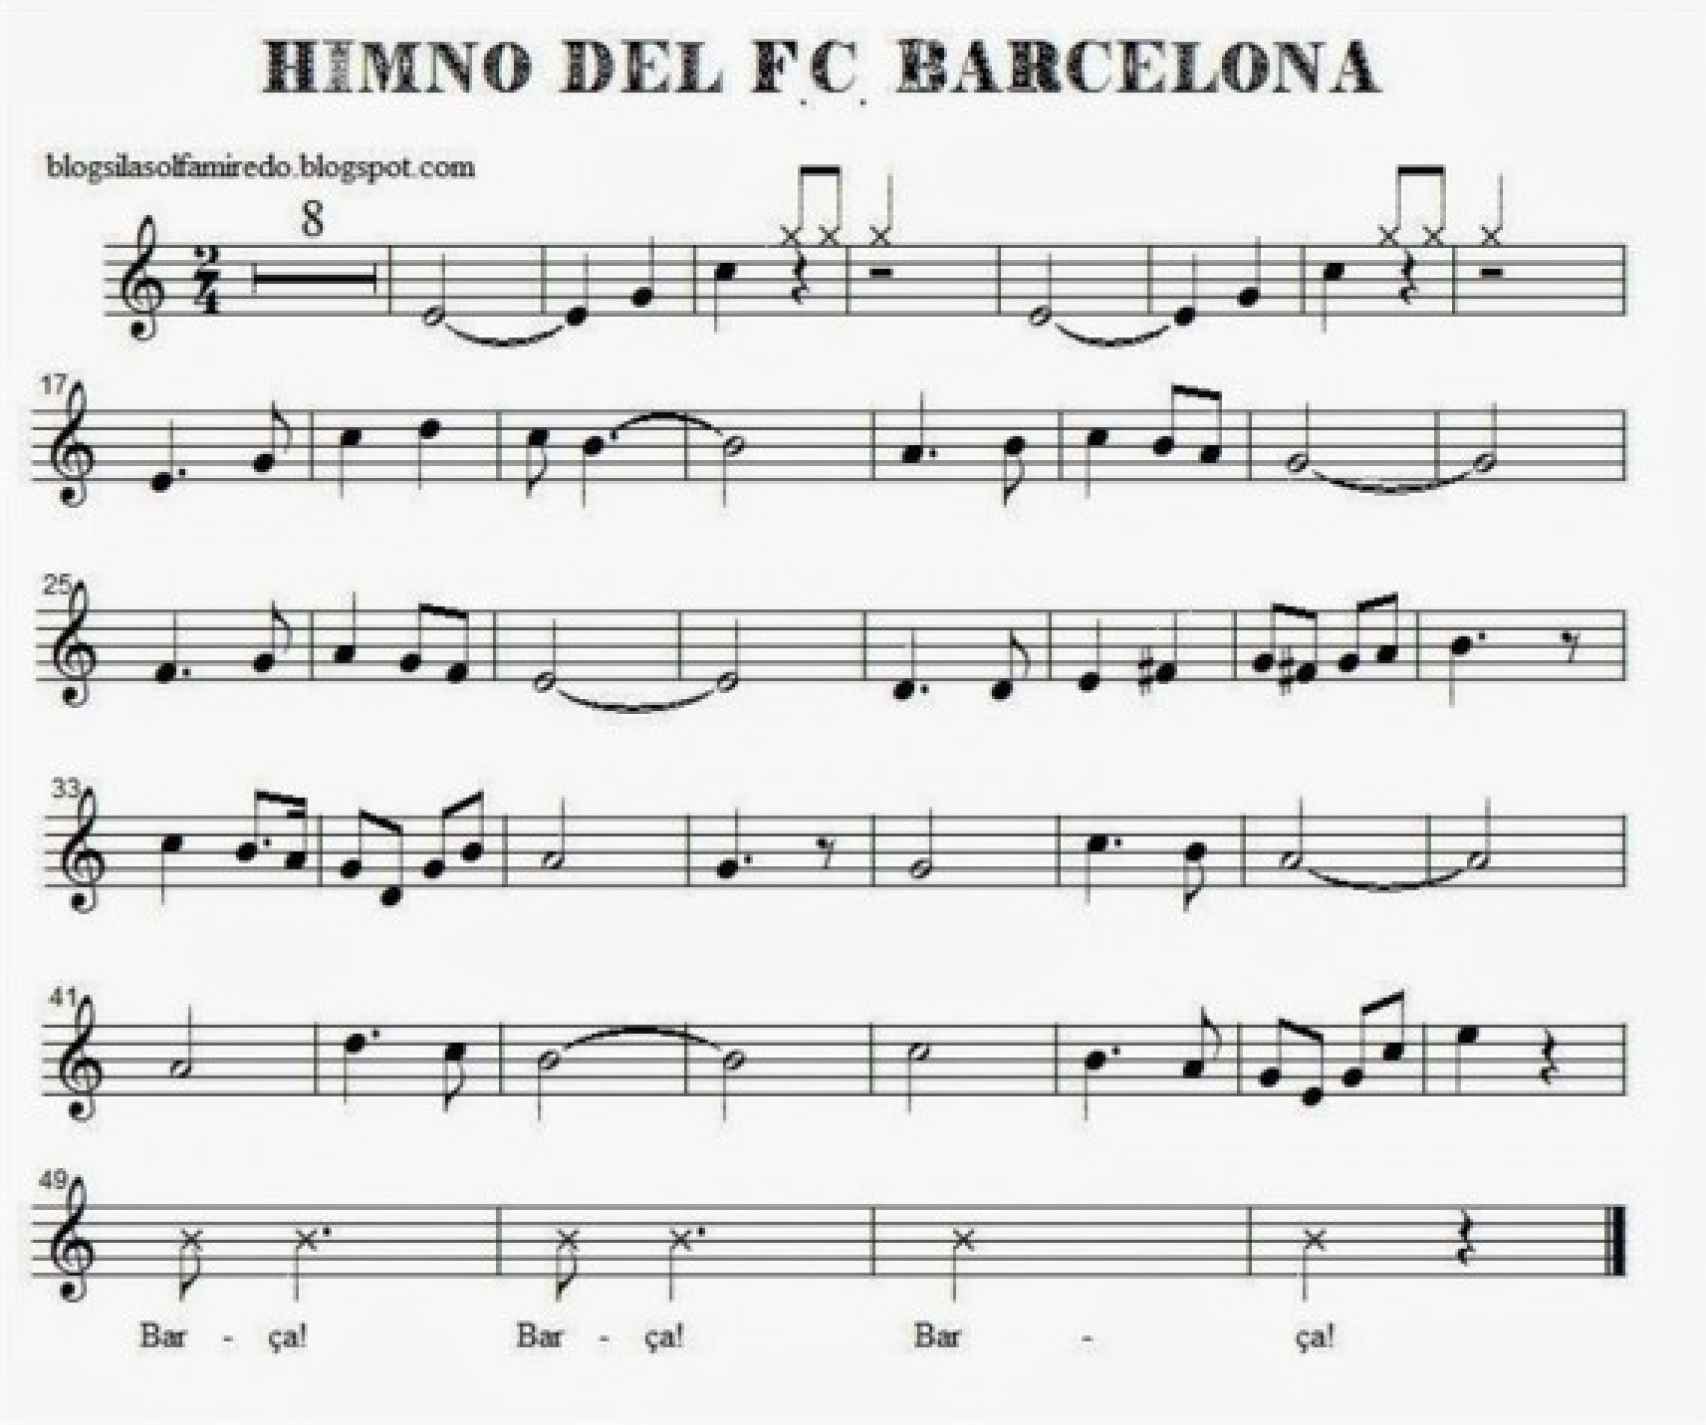 La partitura del primer himno del FC Barcelona, estrenado en 1910